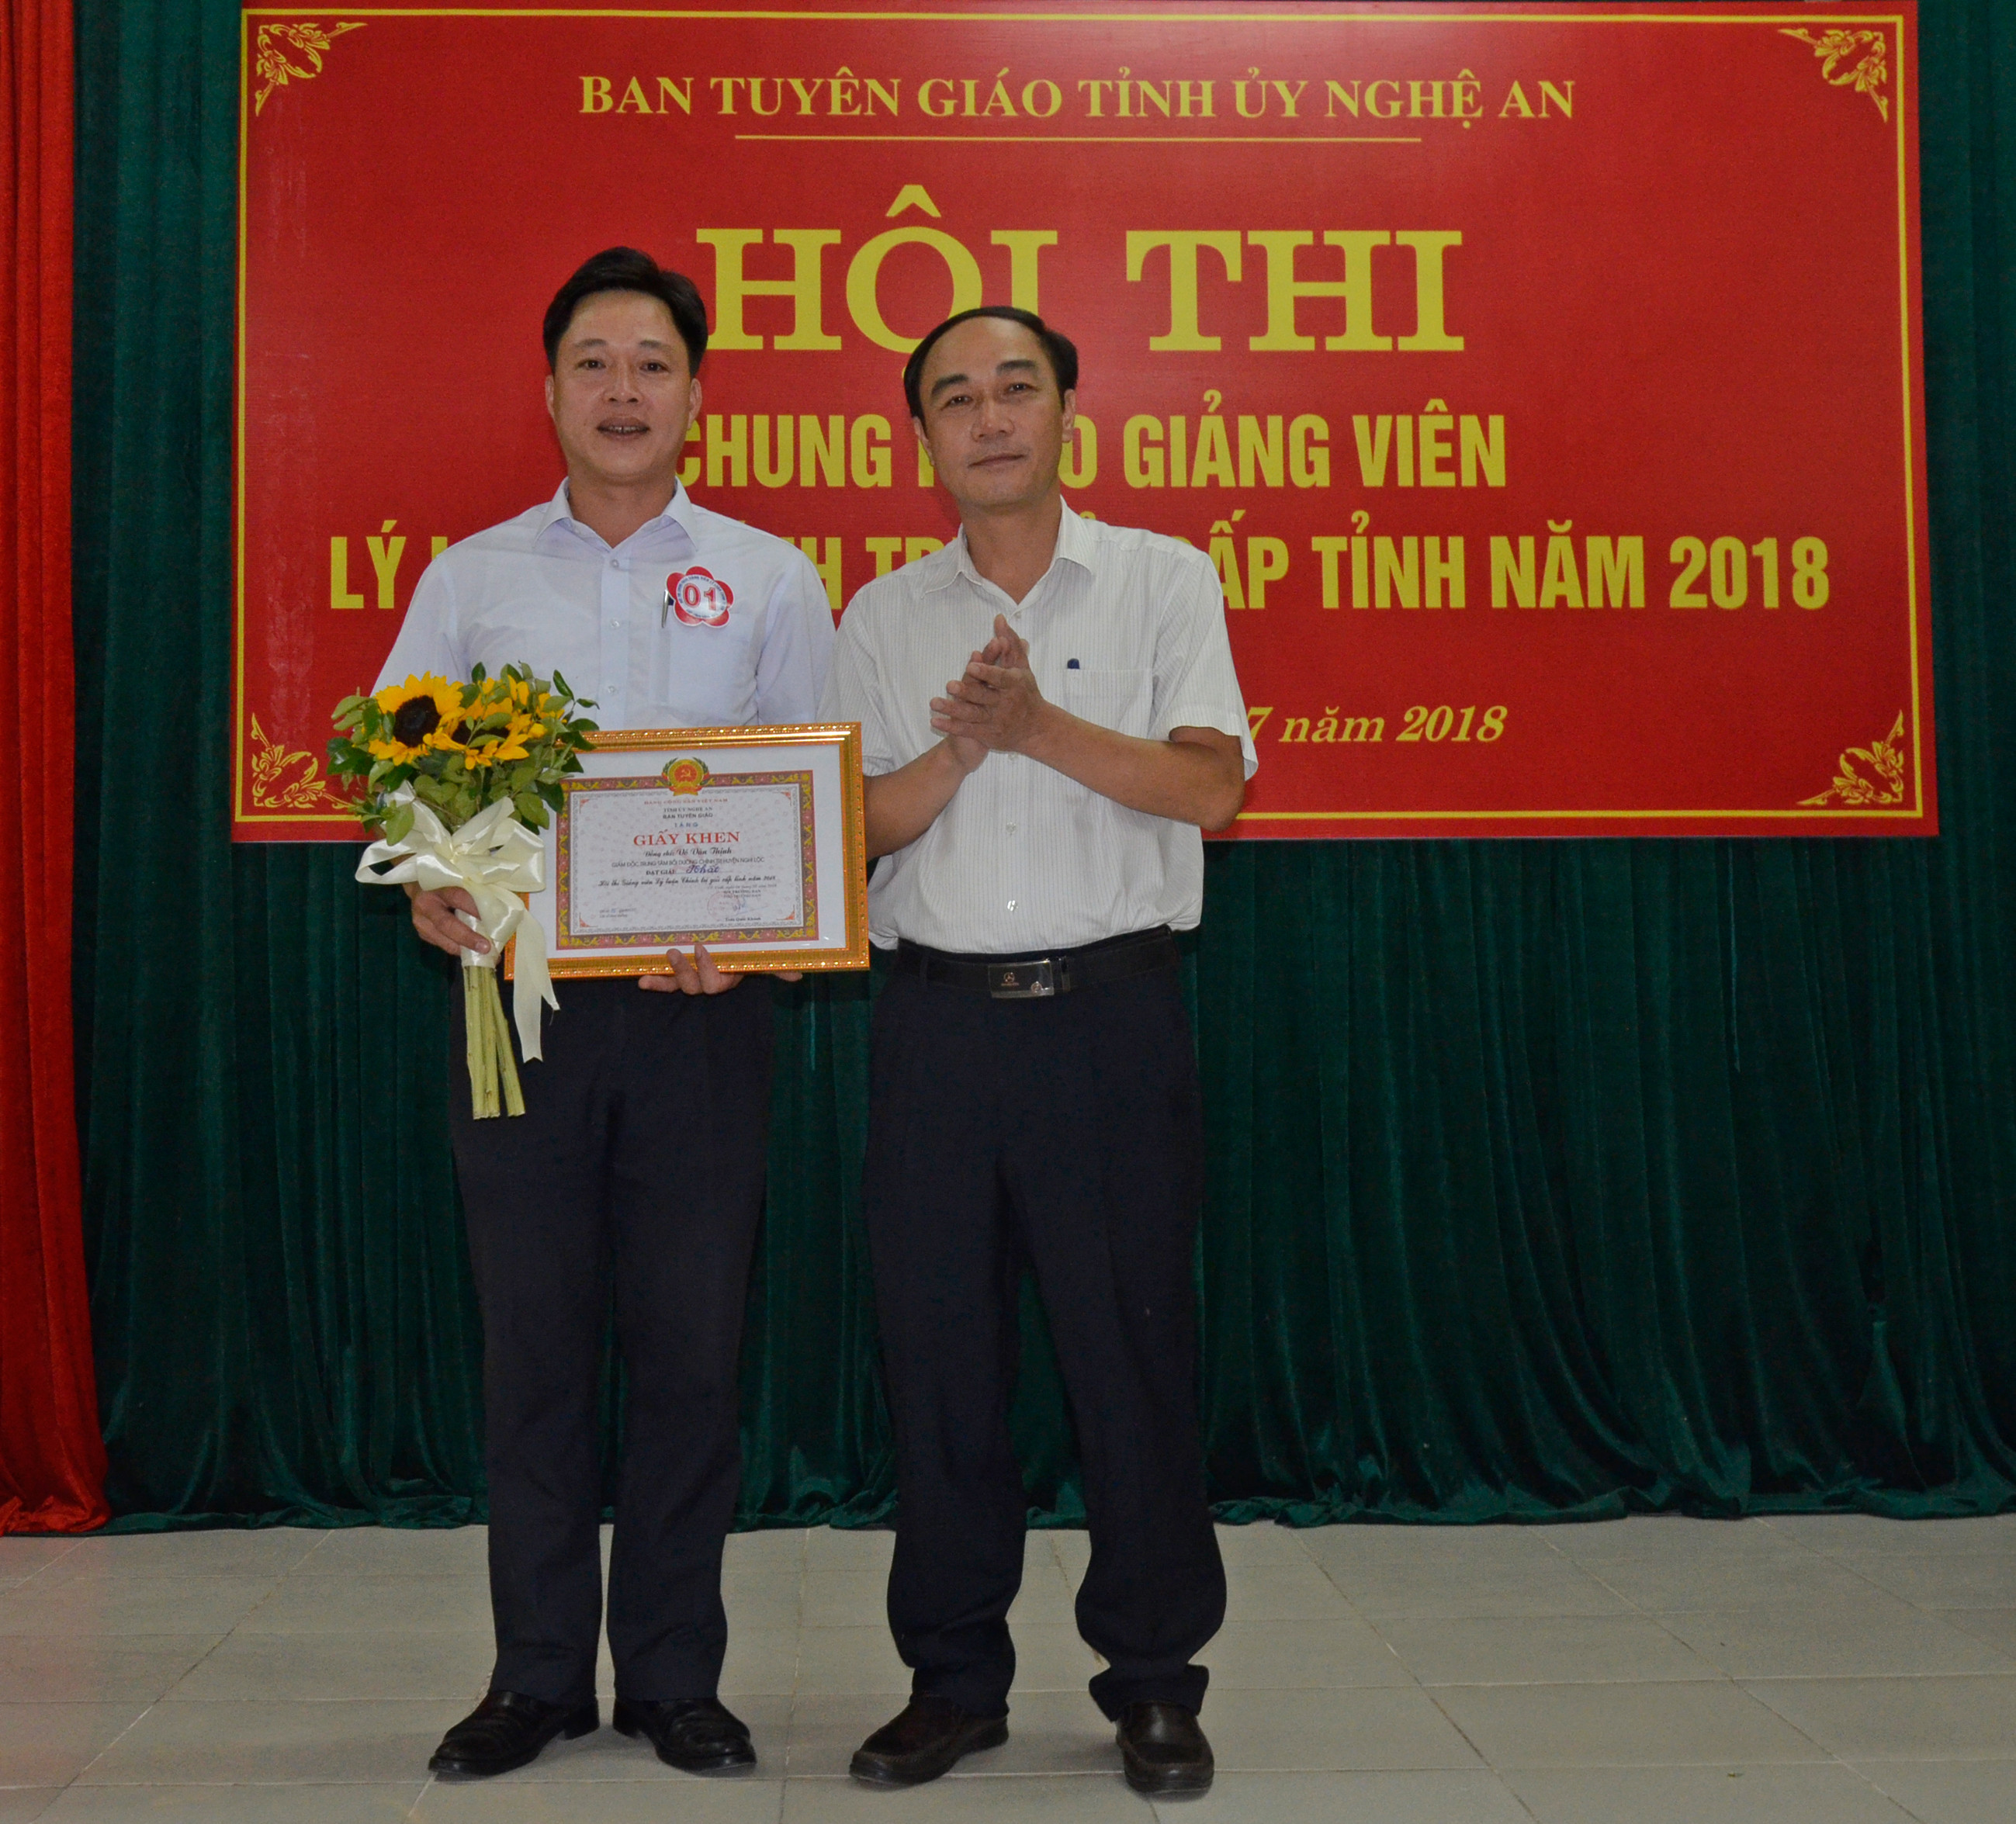 Phó Trưởng Ban Tuyên giáo Tỉnh ủy Trần Quốc Khánh trao giải nhất cho giảng viên Võ Văn Thịnh. Ảnh Thanh Lê